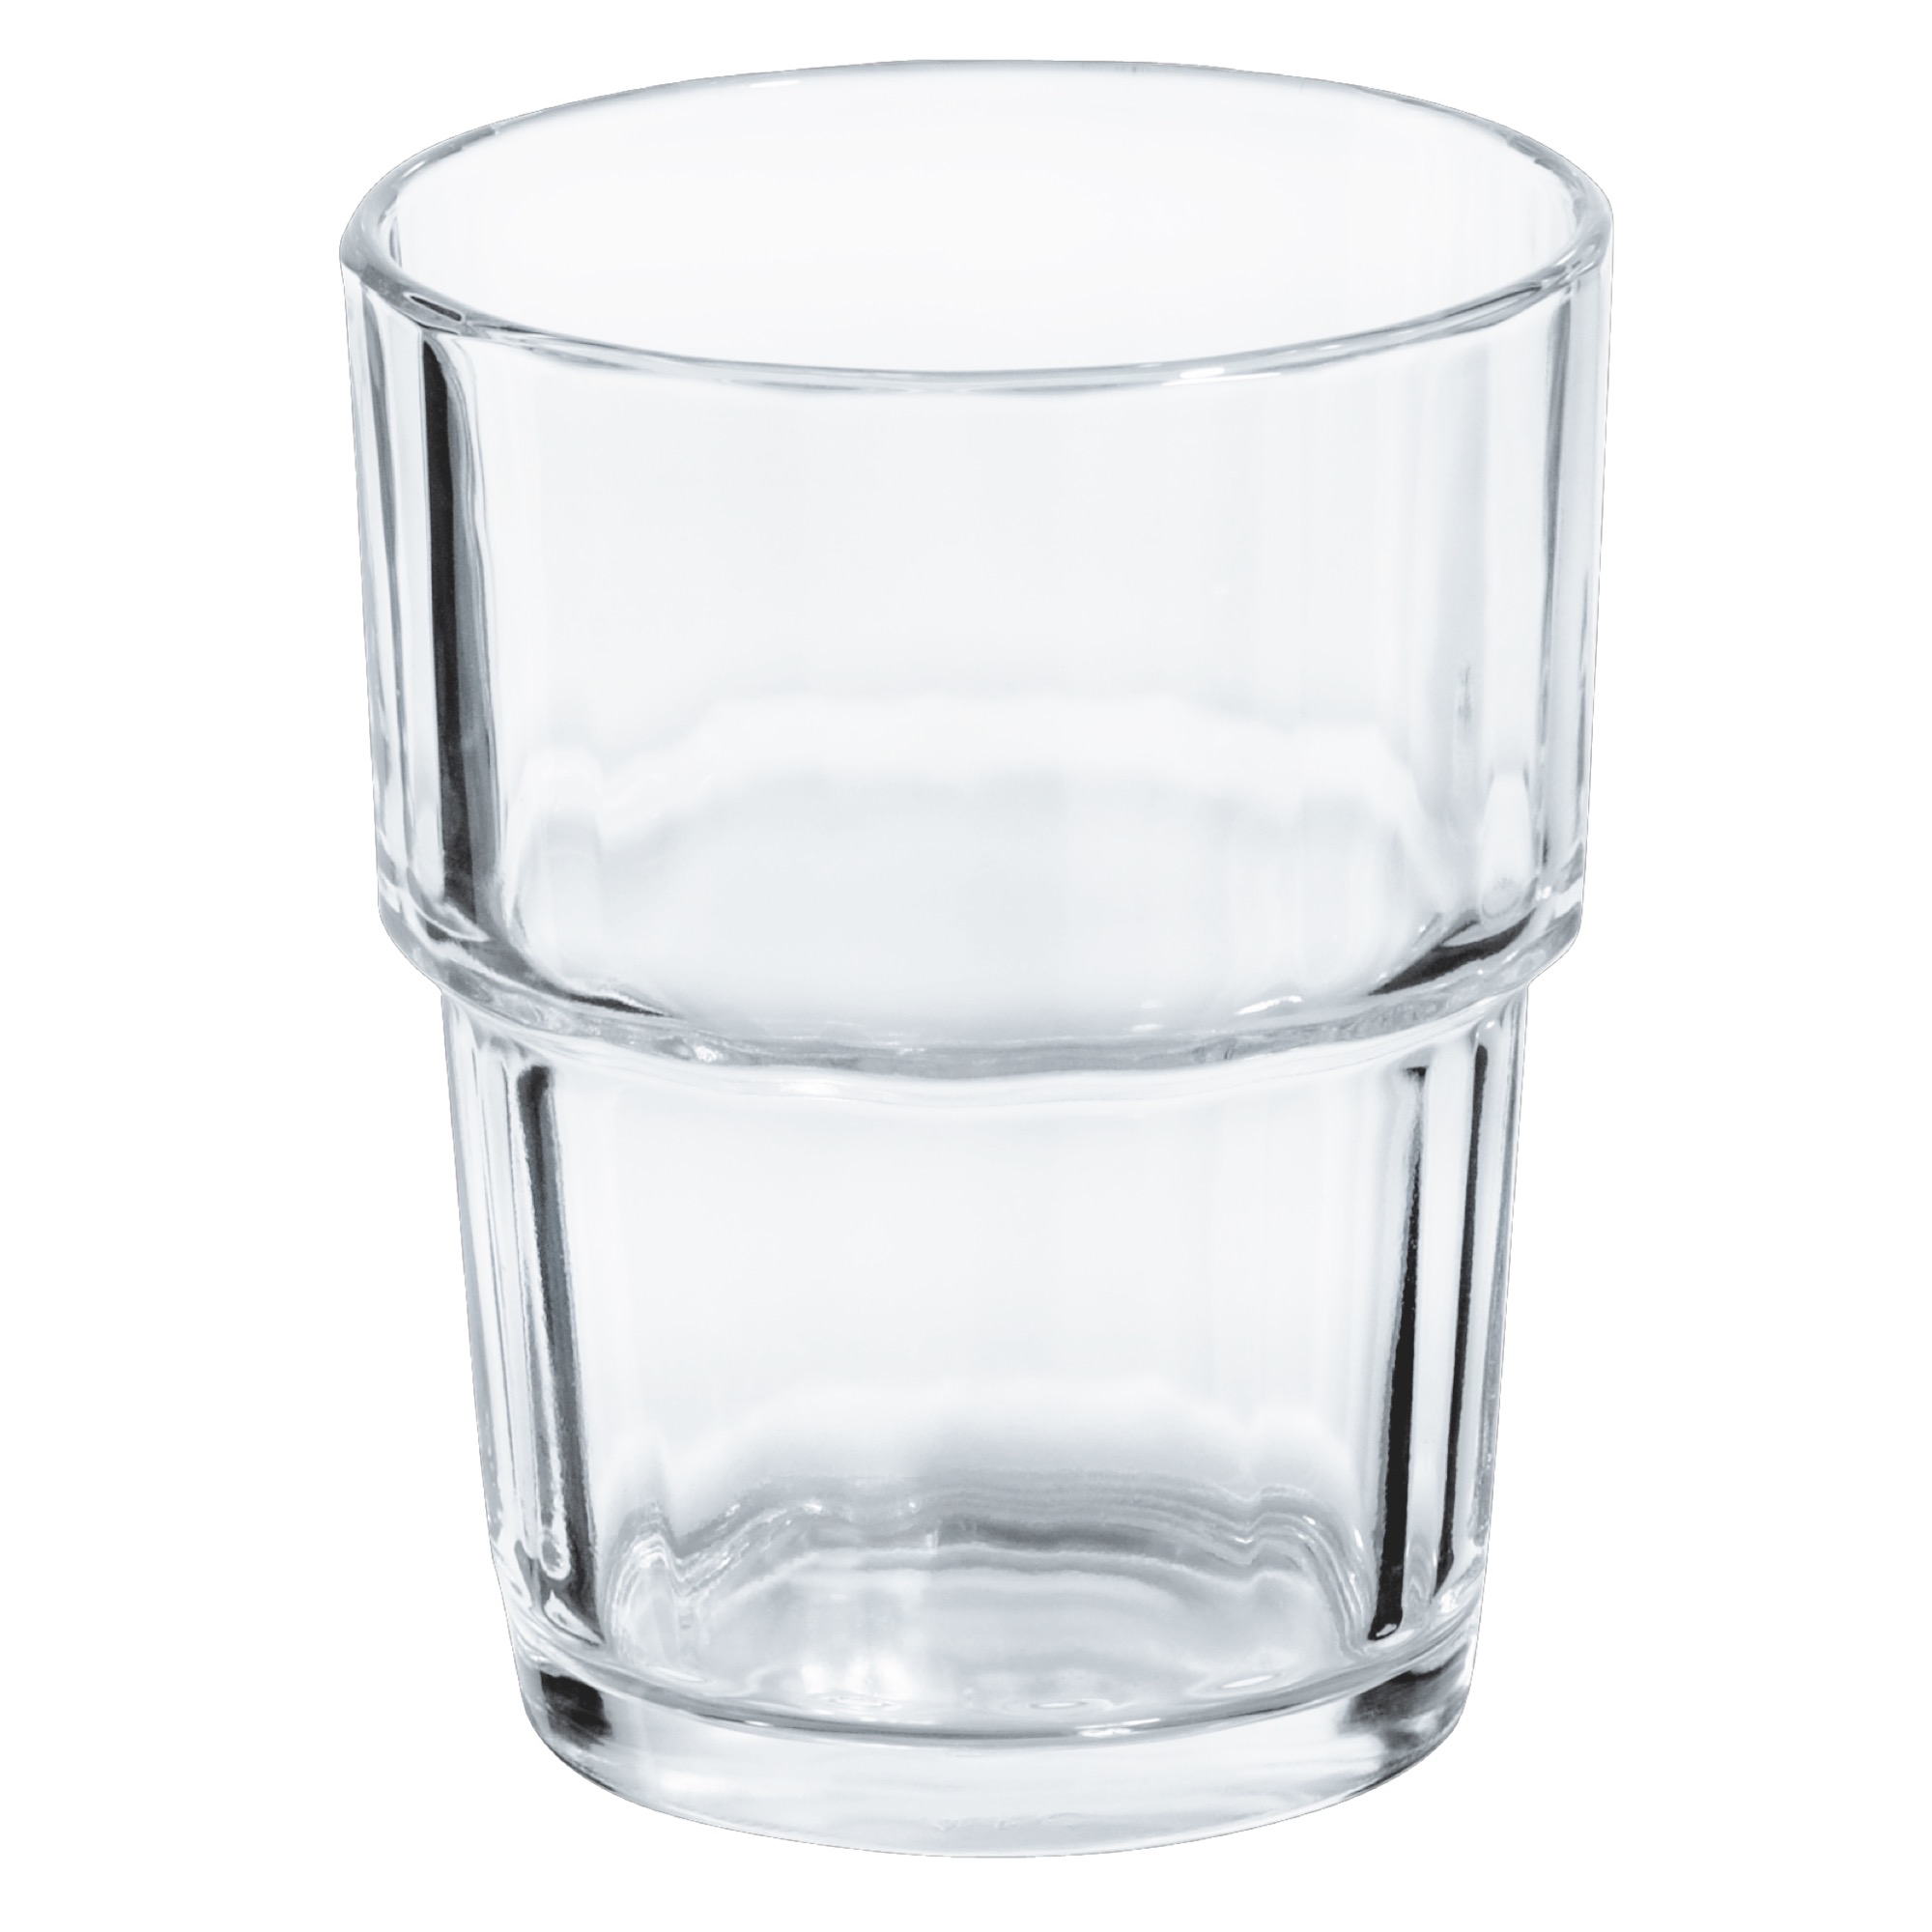 Arc. Norvege pohár na whisky 200ml